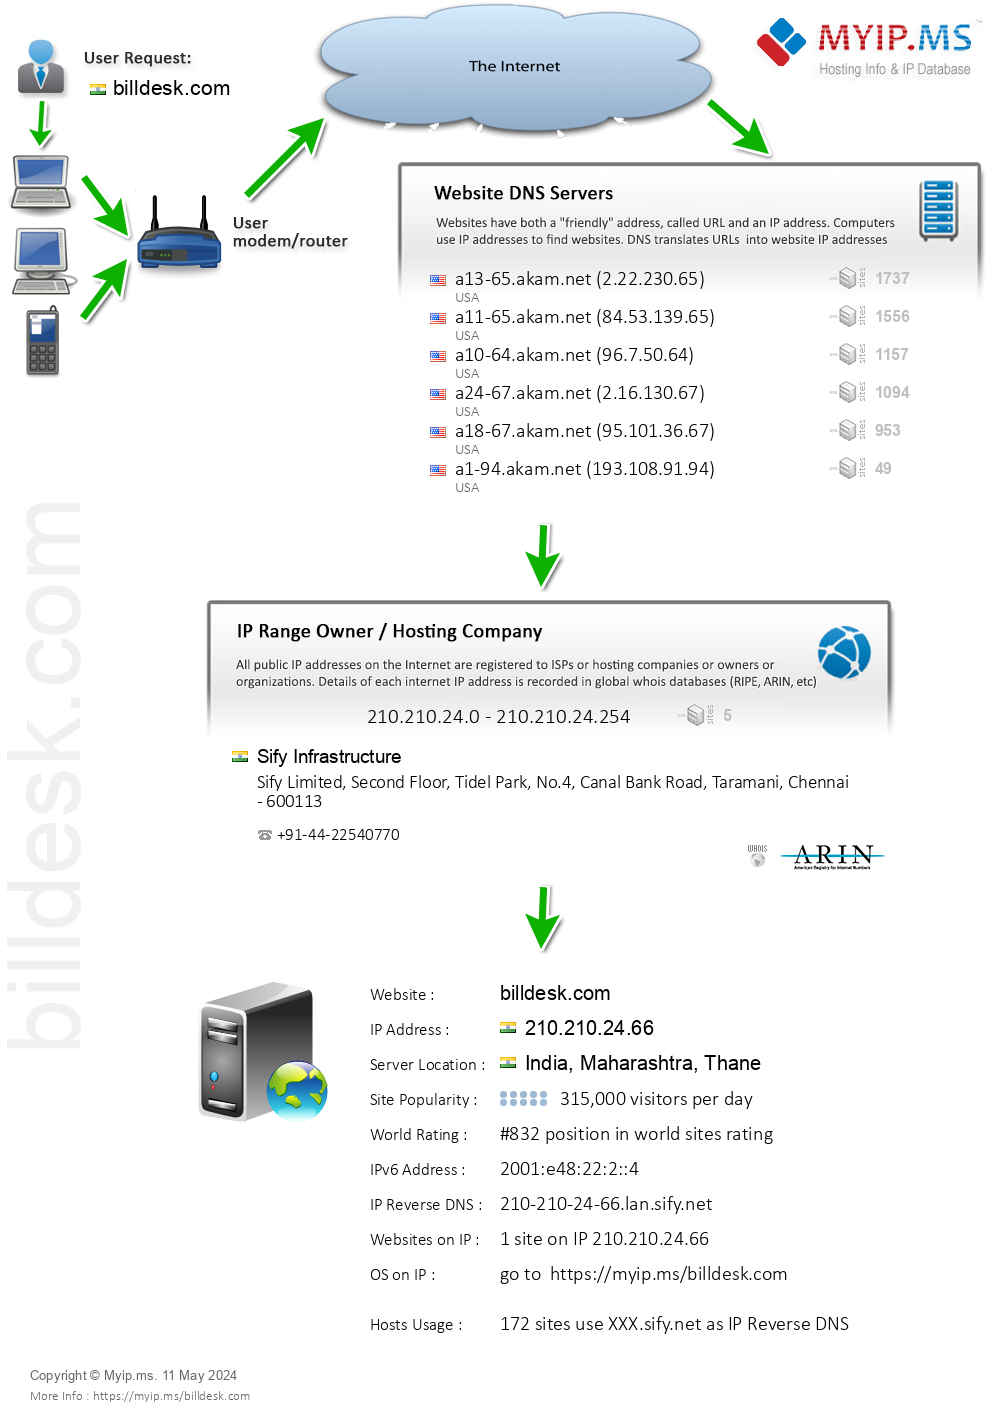 Billdesk.com - Website Hosting Visual IP Diagram